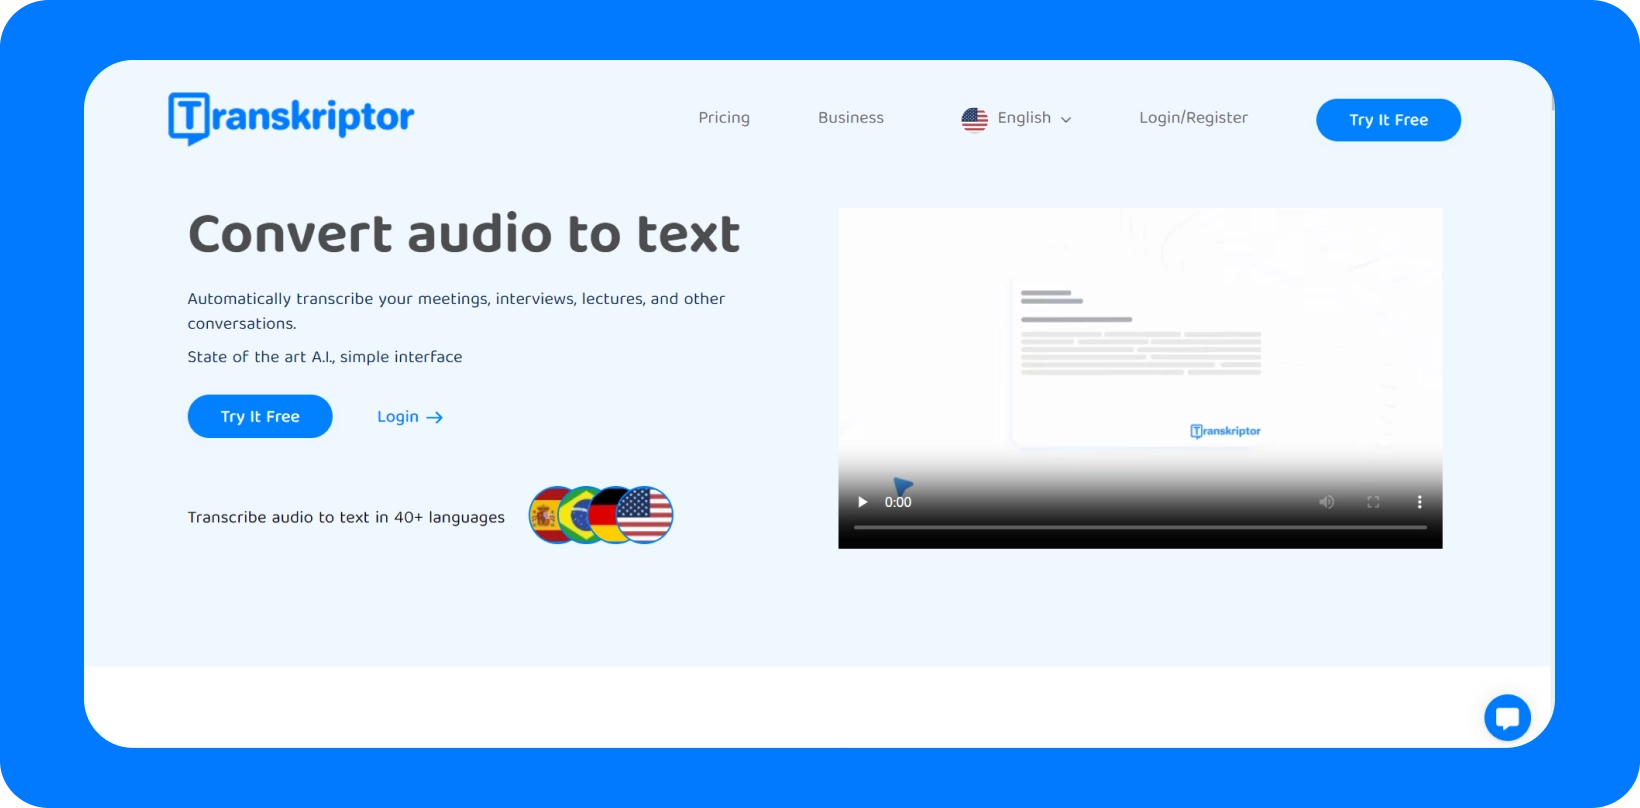 Transkriptor rozhranie predstavujúce službu "Konvertovať zvuk na text" s podporou viacerých jazykov.